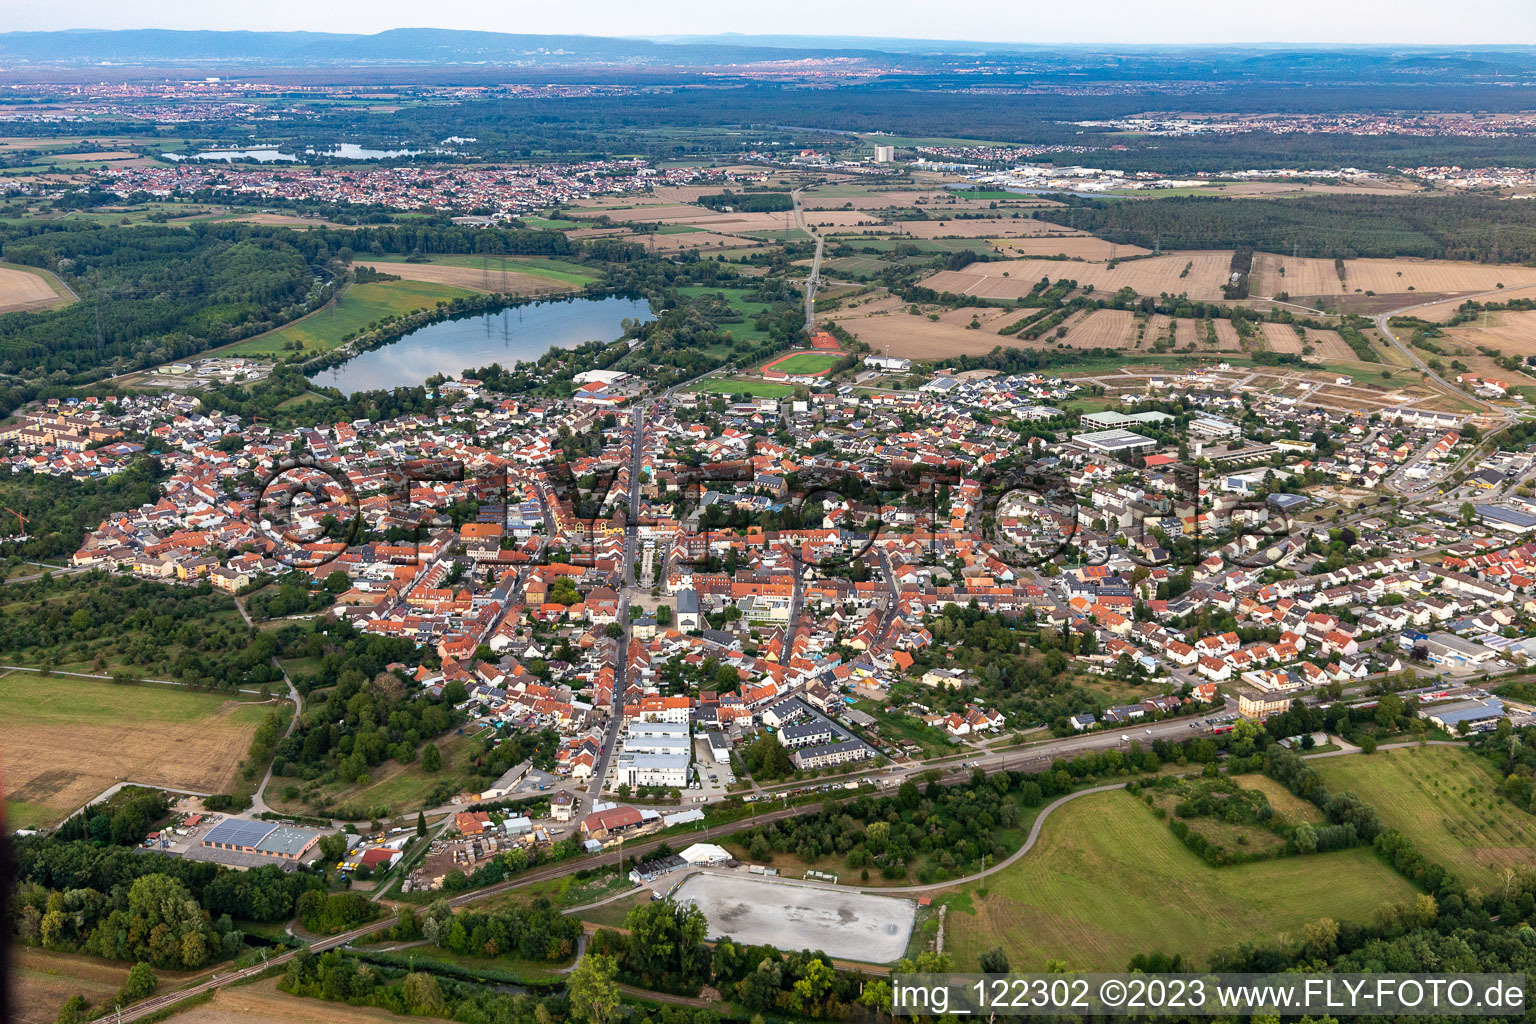 Luftbild von Ortsansicht der Straßen und Häuser der Wohngebiete in Philippsburg im Bundesland Baden-Württemberg, Deutschland